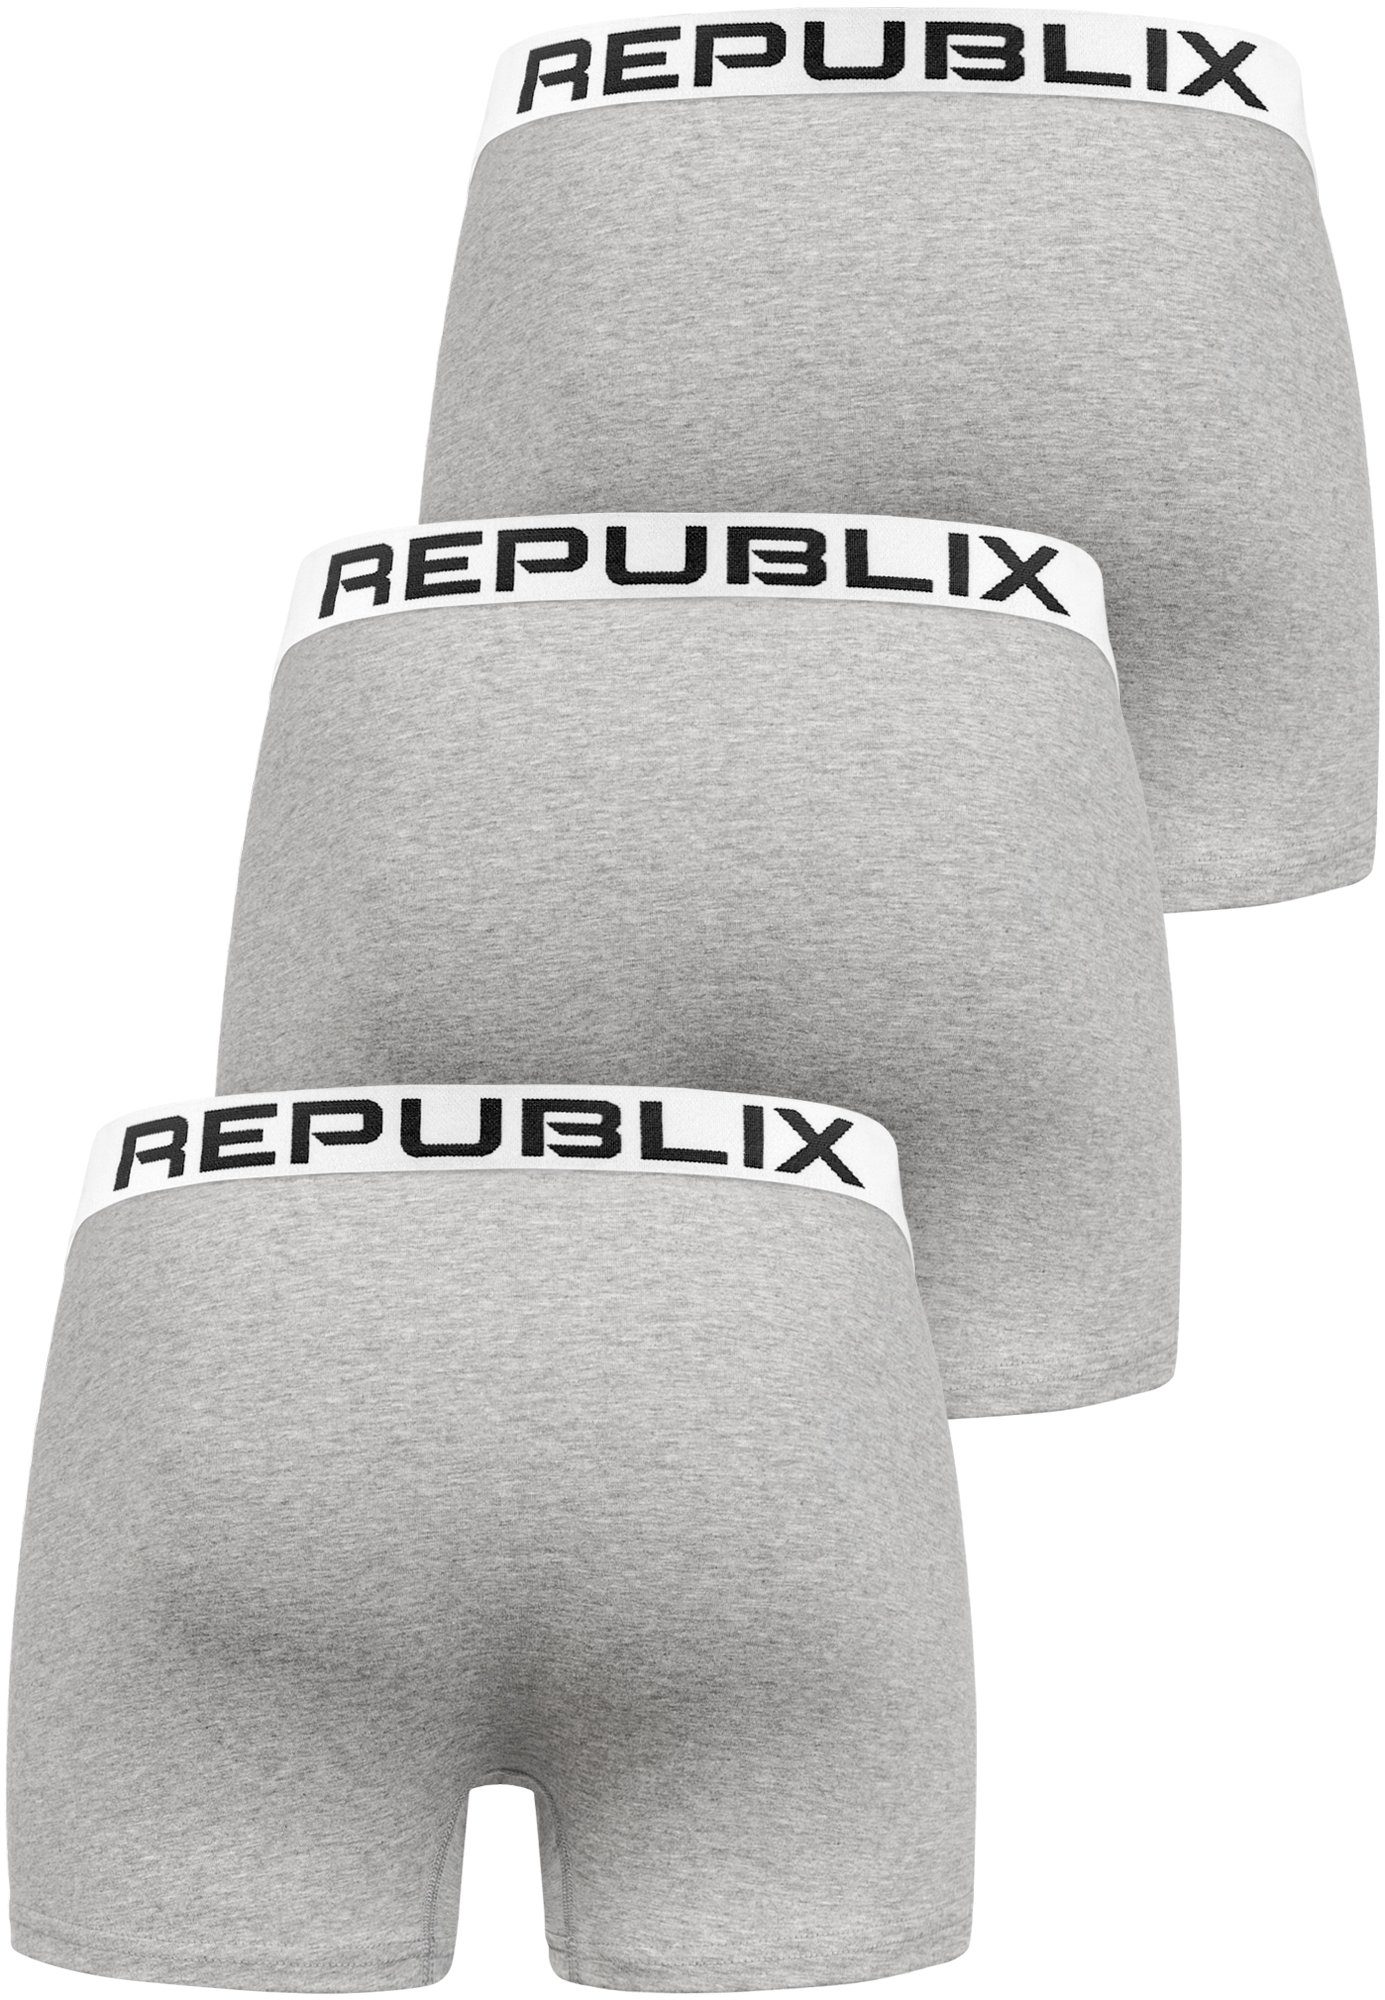 DON Grau/Weiß Boxershorts Männer Baumwolle Unterhose REPUBLIX Herren (3er-Pack) Unterwäsche